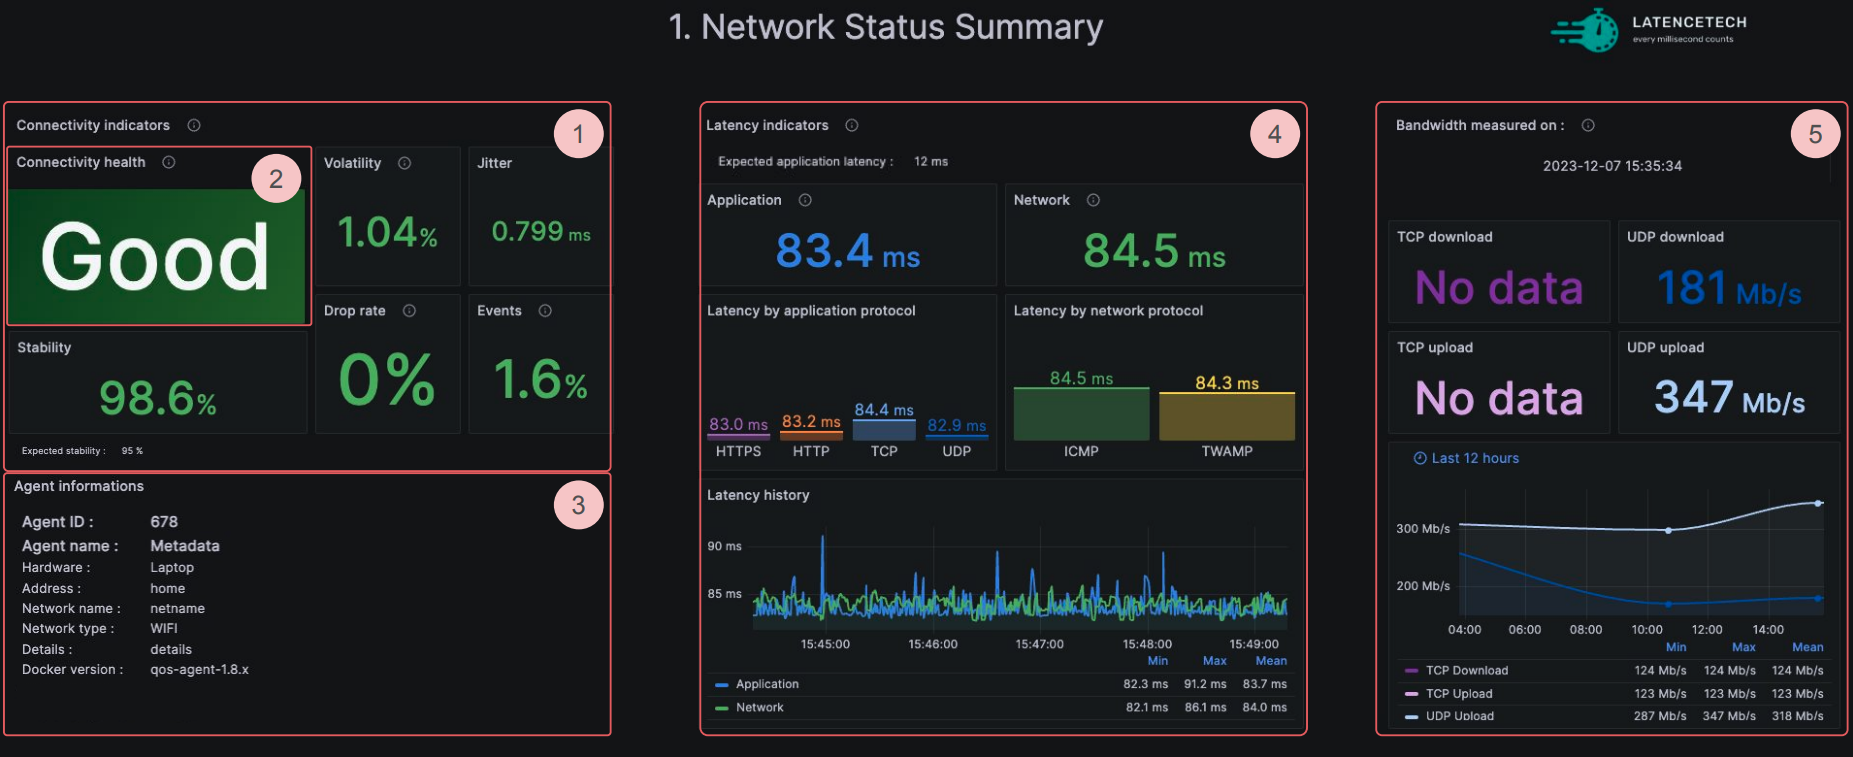 Network Status Summary